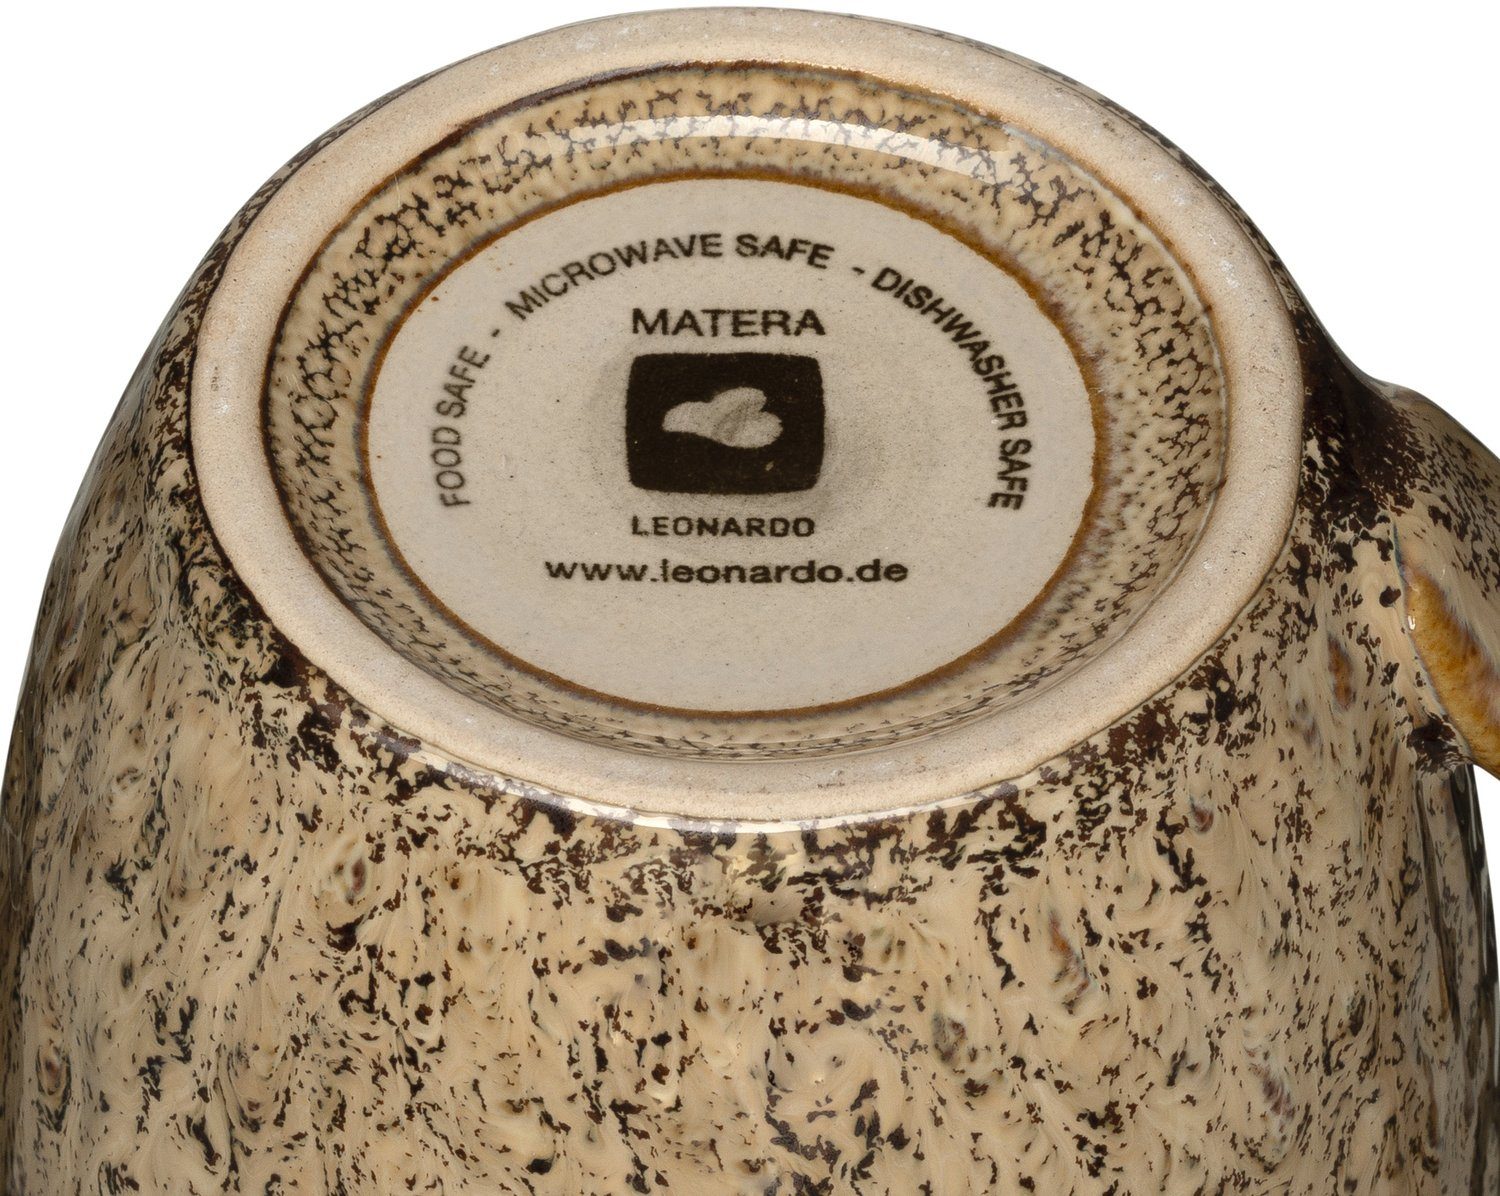 ml, Matera, 430 LEONARDO Keramik, sand 6-teilig Becher